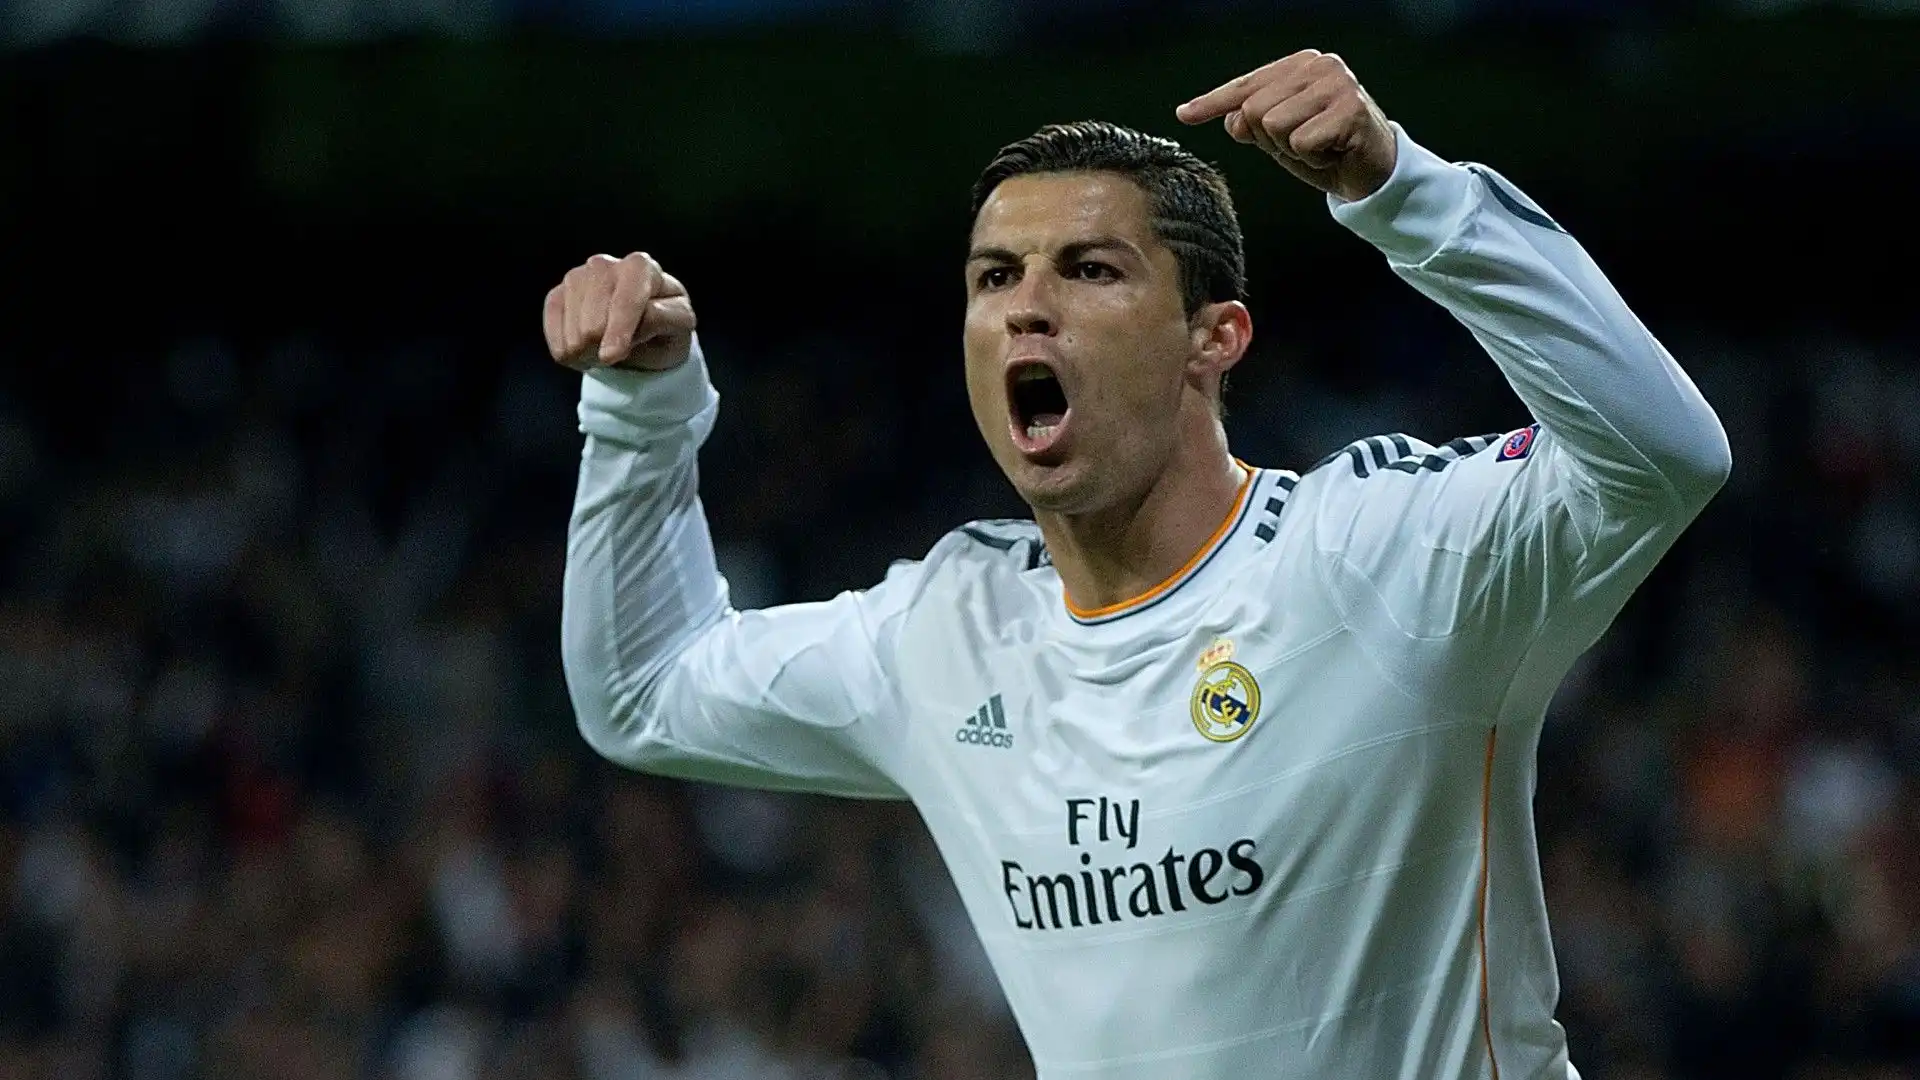 2013/14 Cristiano Ronaldo (Real Madrid) 17 gol in 11 presenze